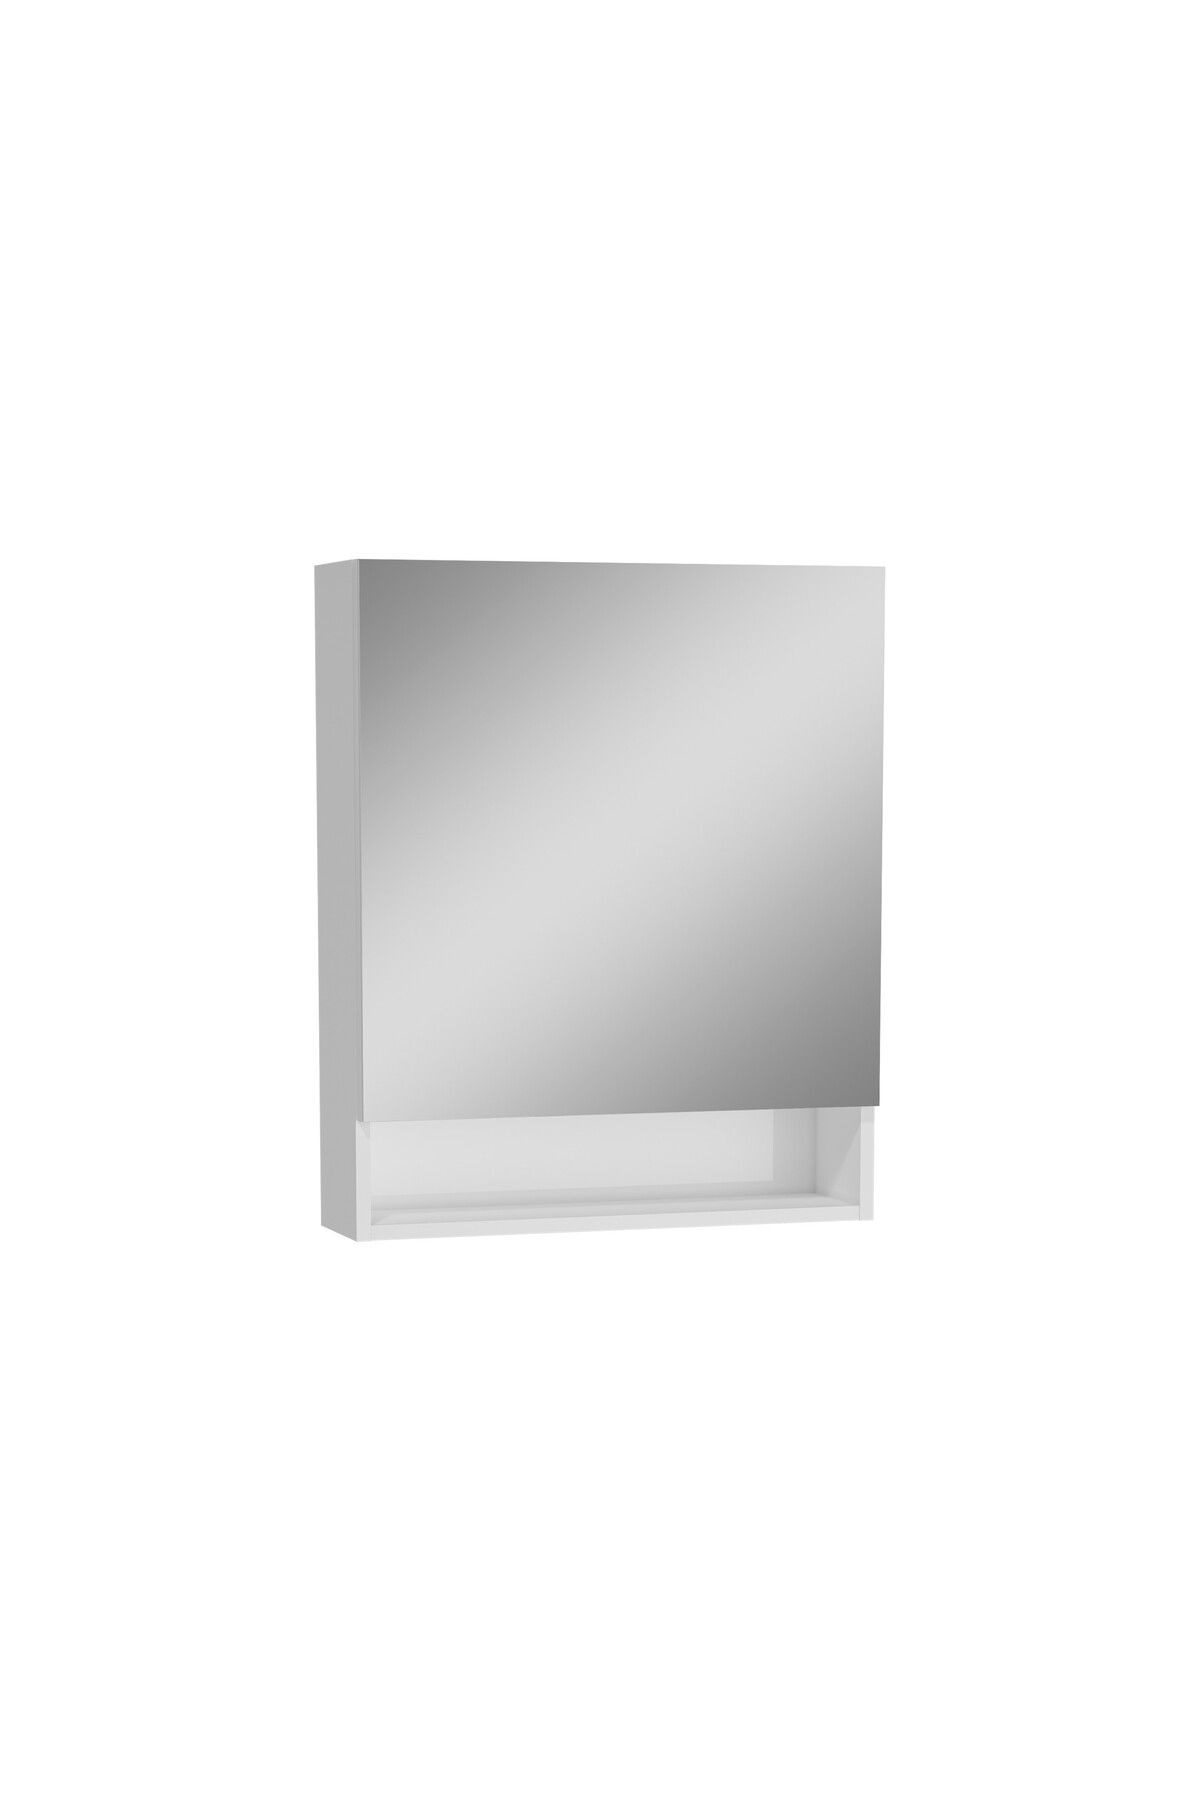 VitrA Ardea 66113 Dolaplı Ayna, 60 Cm, Parlak Beyaz, Sol